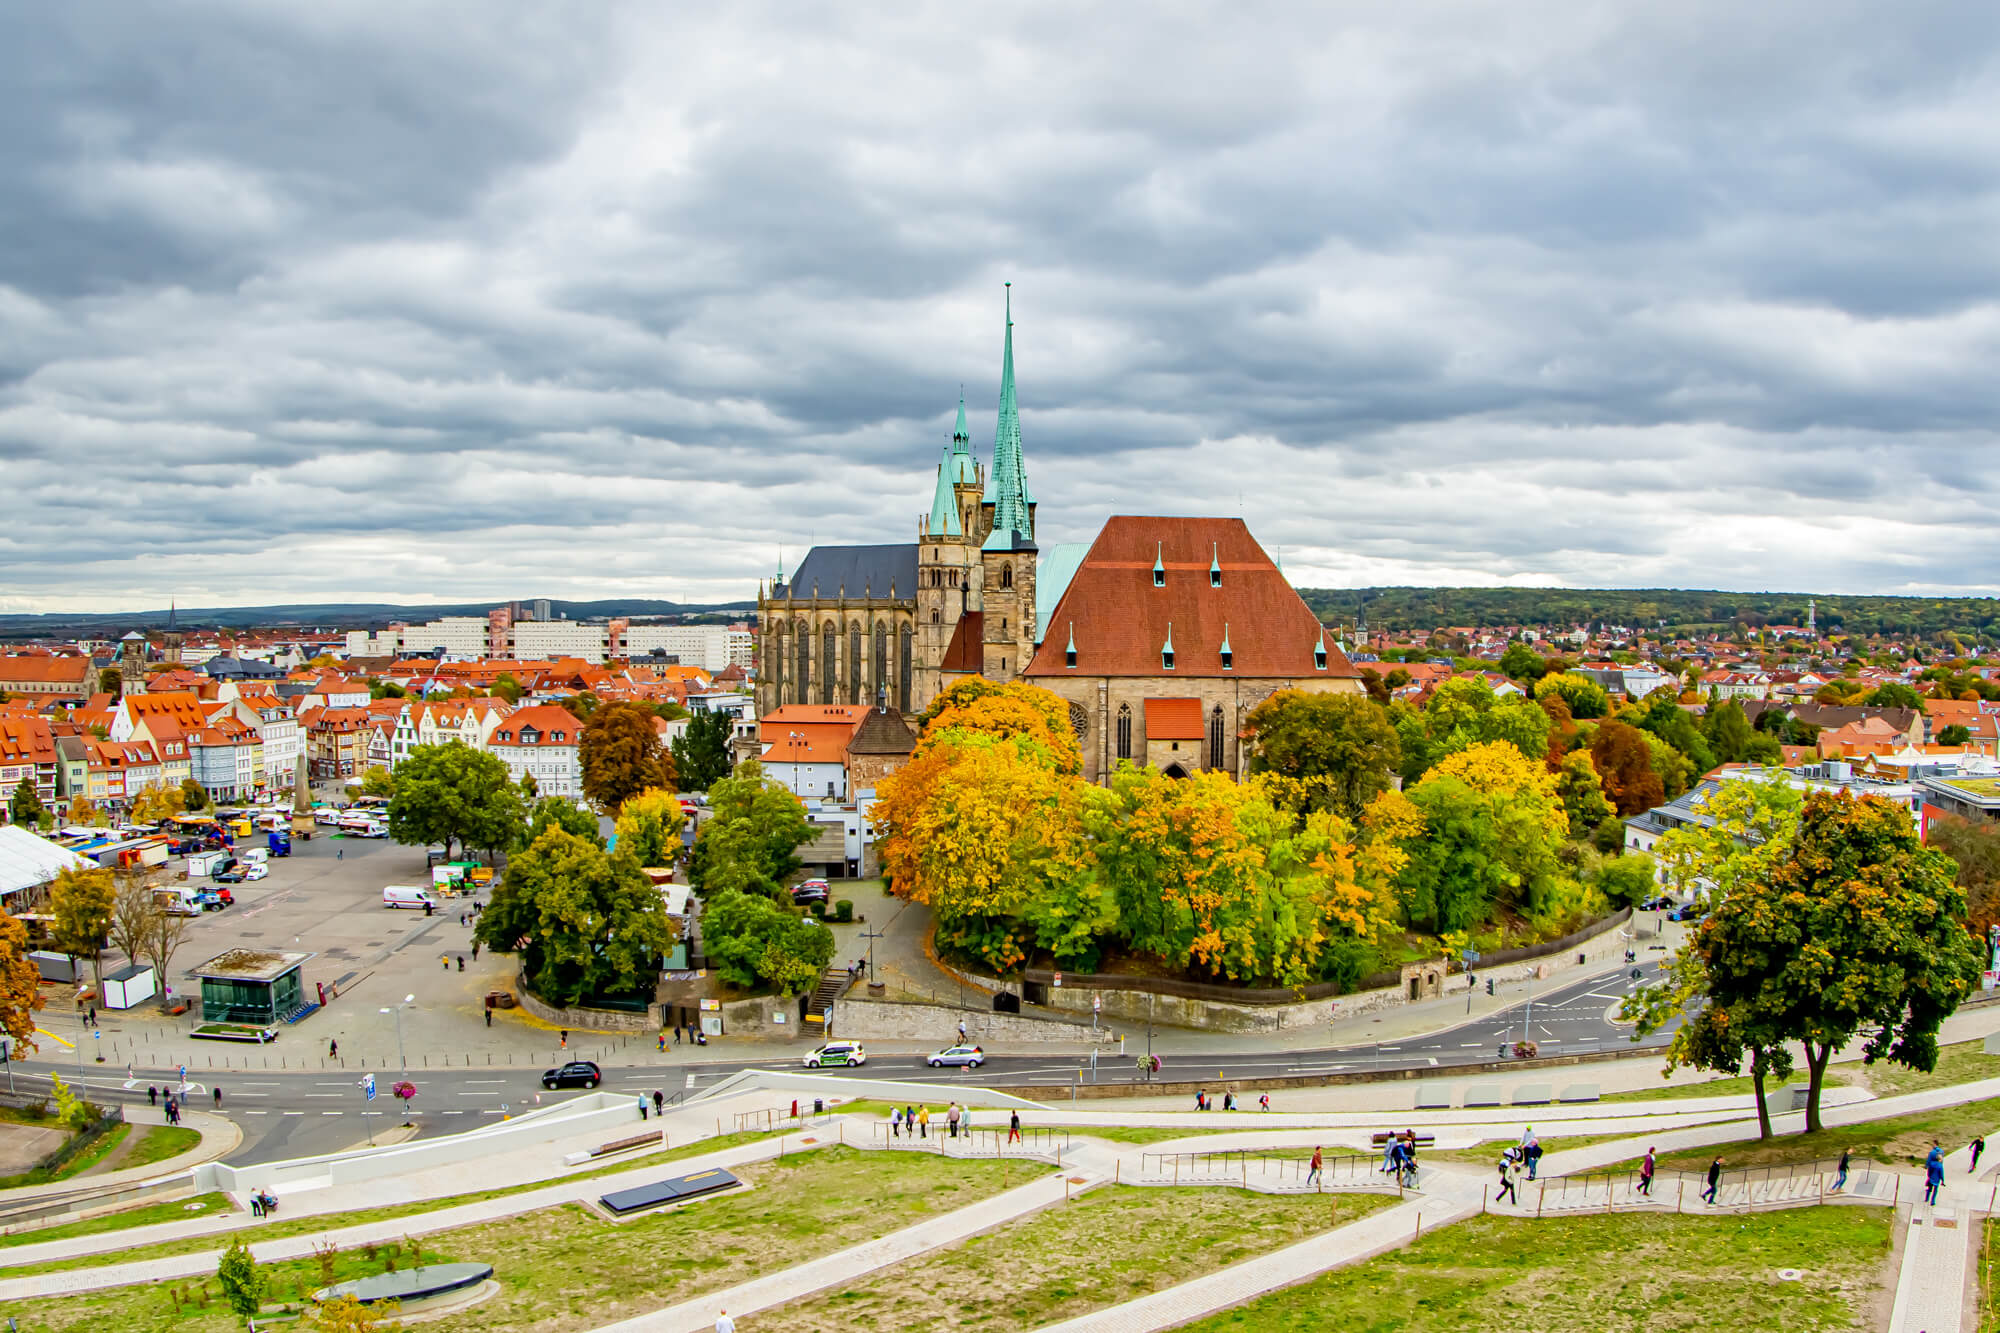 Der Dom von Erfurt von der Zitadelle Petersberg aus betrachtet. Es ist Herbst, die Bäume färben sich rot und gelb und der Himmel über dem Dom its grau.